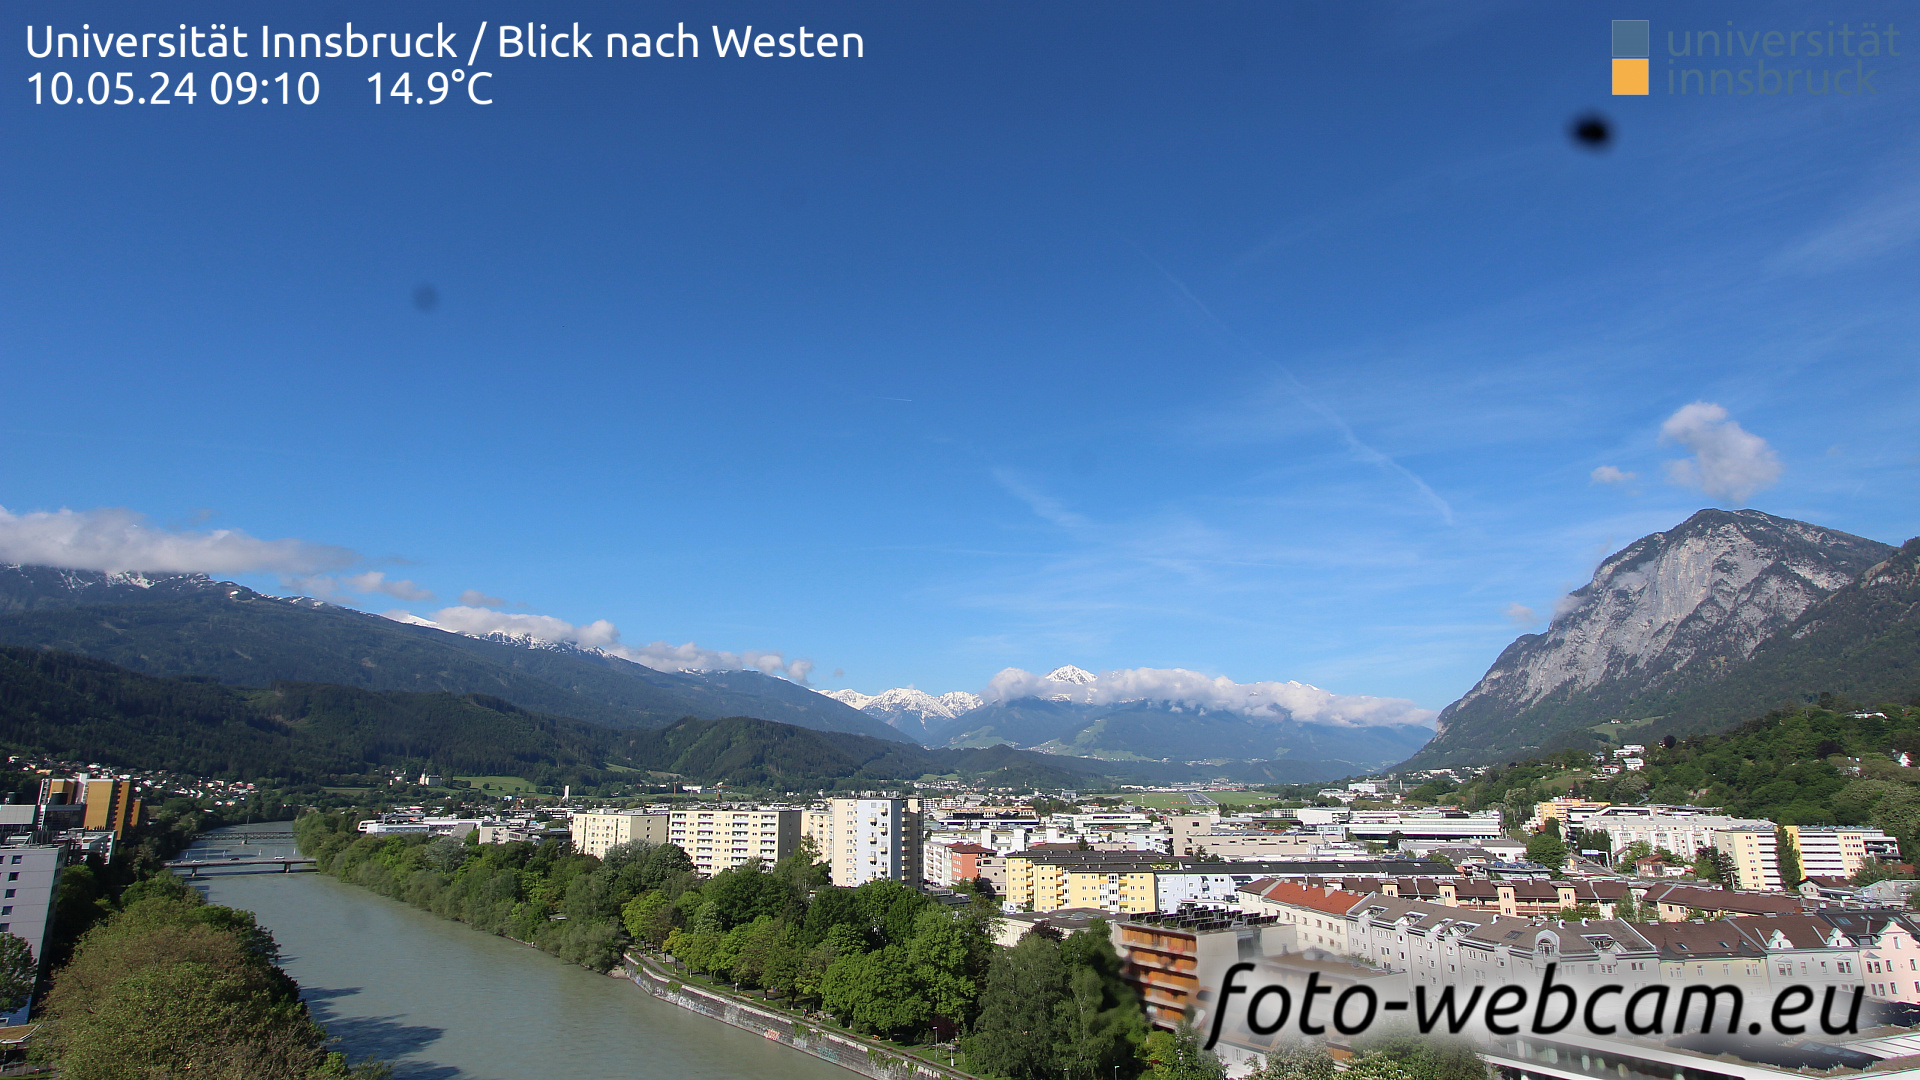 Innsbruck Di. 09:17